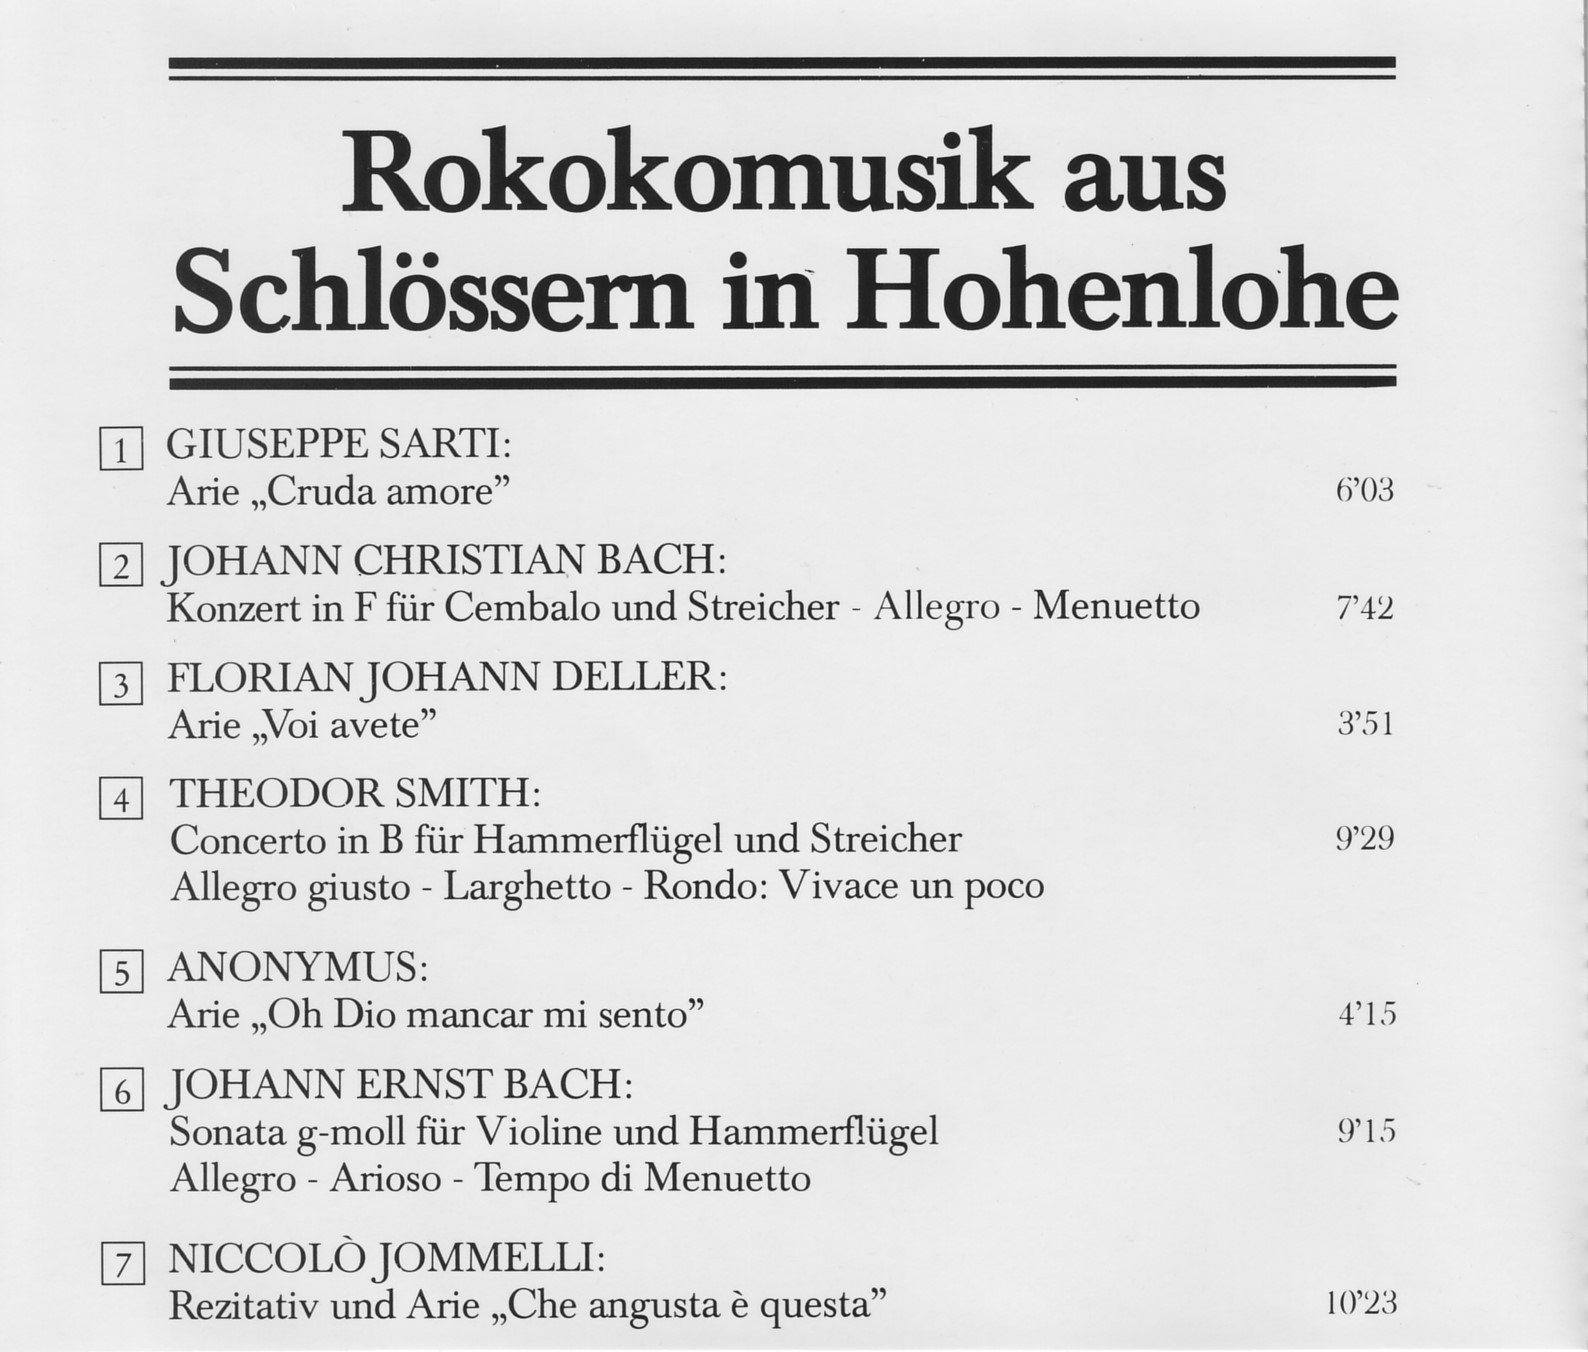 Rokokomusik aus Schlössern in Hohenlohe